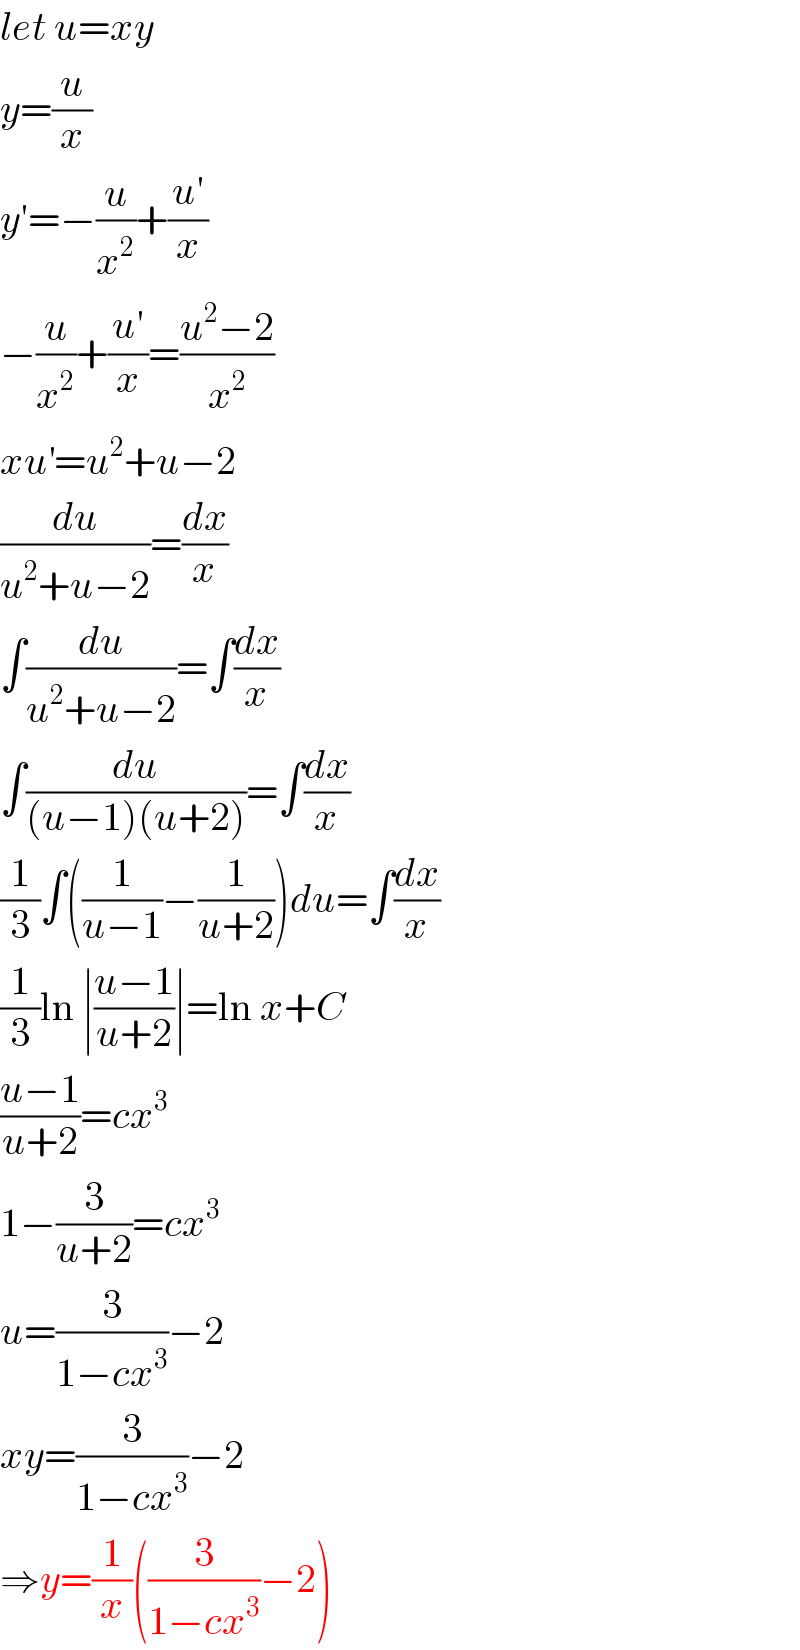 let u=xy  y=(u/x)  y′=−(u/x^2 )+((u′)/x)  −(u/x^2 )+((u′)/x)=((u^2 −2)/x^2 )  xu^′ =u^2 +u−2  (du/(u^2 +u−2))=(dx/x)  ∫(du/(u^2 +u−2))=∫(dx/x)  ∫(du/((u−1)(u+2)))=∫(dx/x)  (1/3)∫((1/(u−1))−(1/(u+2)))du=∫(dx/x)  (1/3)ln ∣((u−1)/(u+2))∣=ln x+C  ((u−1)/(u+2))=cx^3   1−(3/(u+2))=cx^3   u=(3/(1−cx^3 ))−2  xy=(3/(1−cx^3 ))−2  ⇒y=(1/x)((3/(1−cx^3 ))−2)  